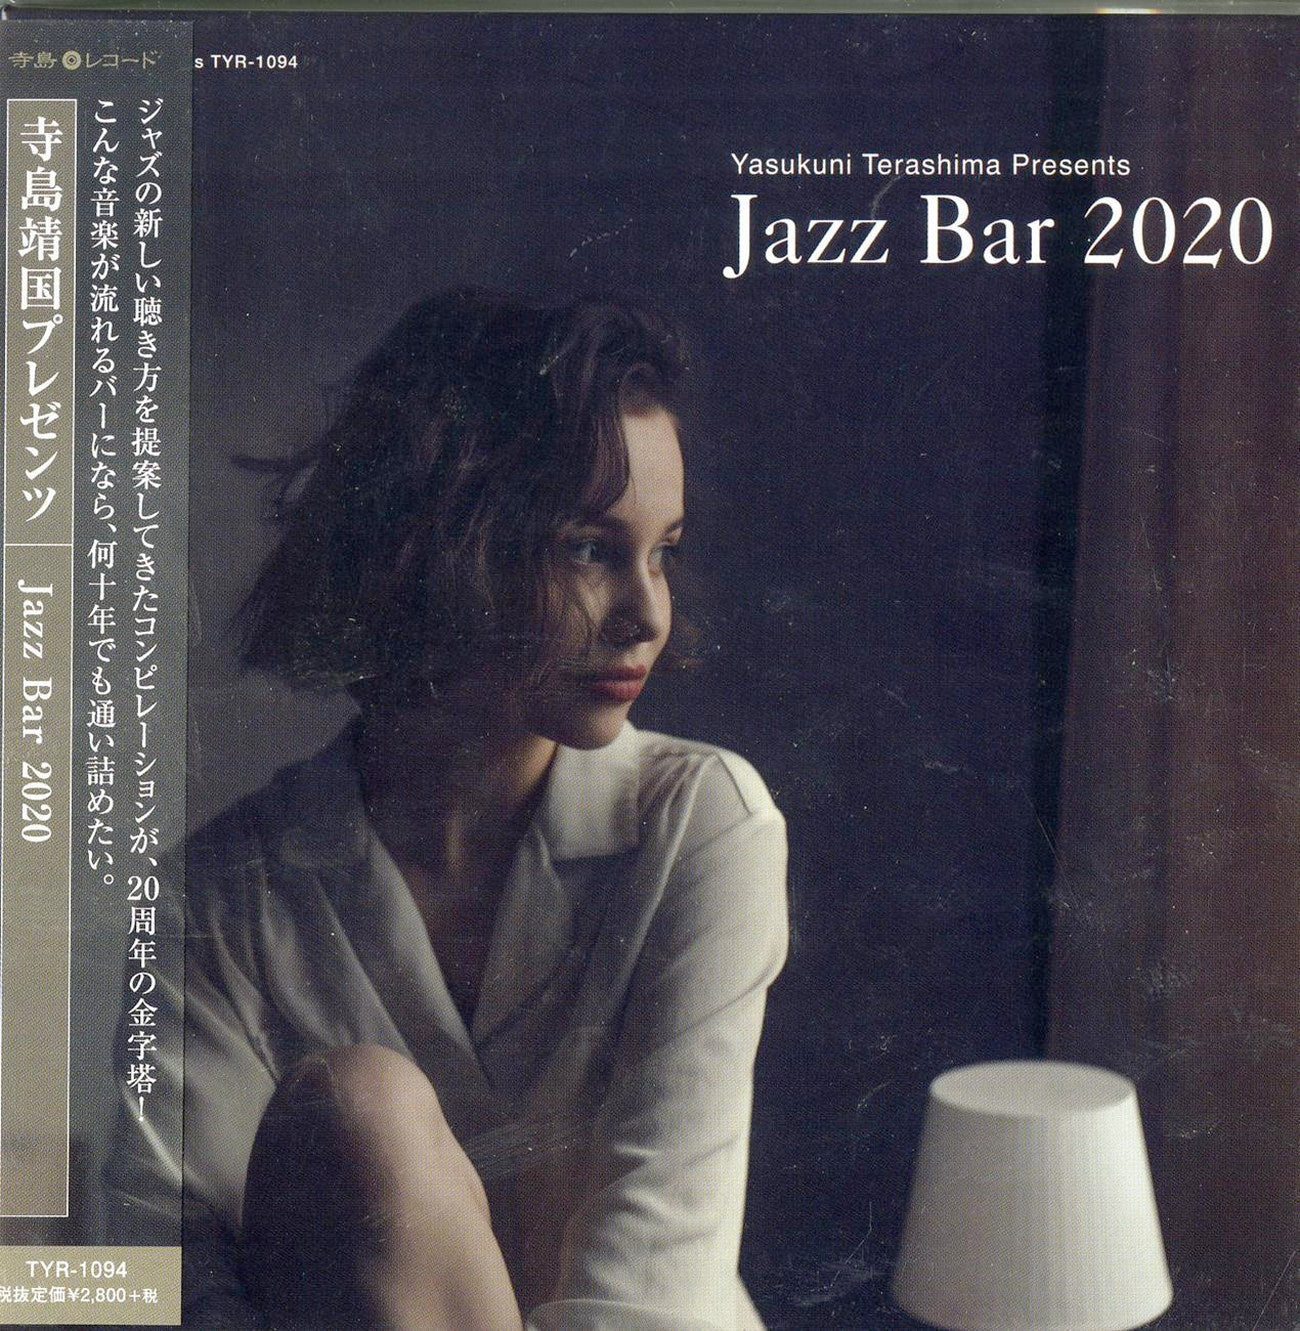 V.A. - Jazz Bar 2020 - Japan Mini LP CD – CDs Vinyl Japan Store 2020